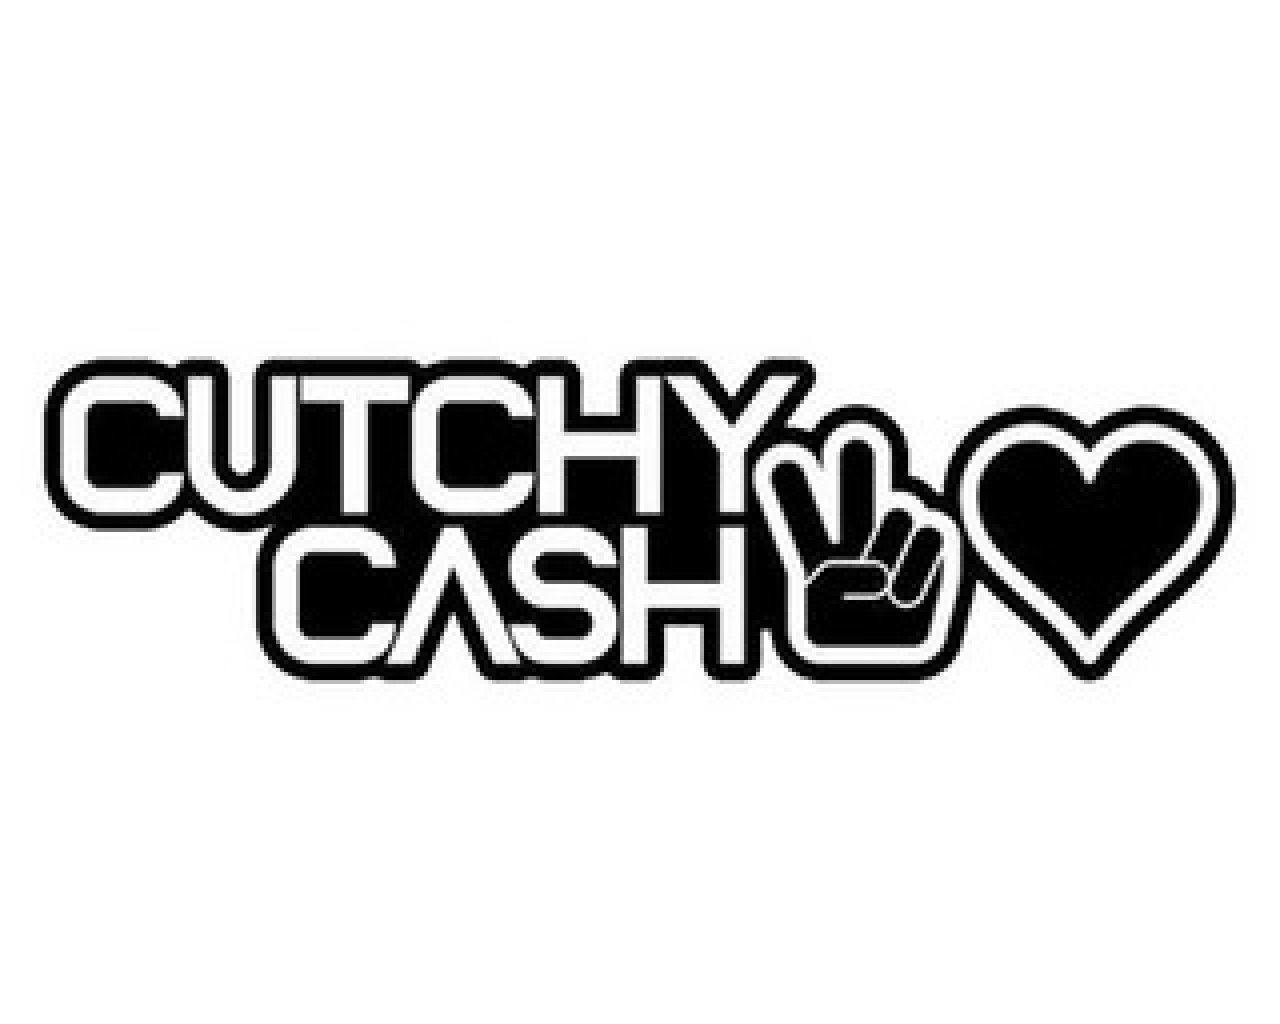 Cutchy Cash